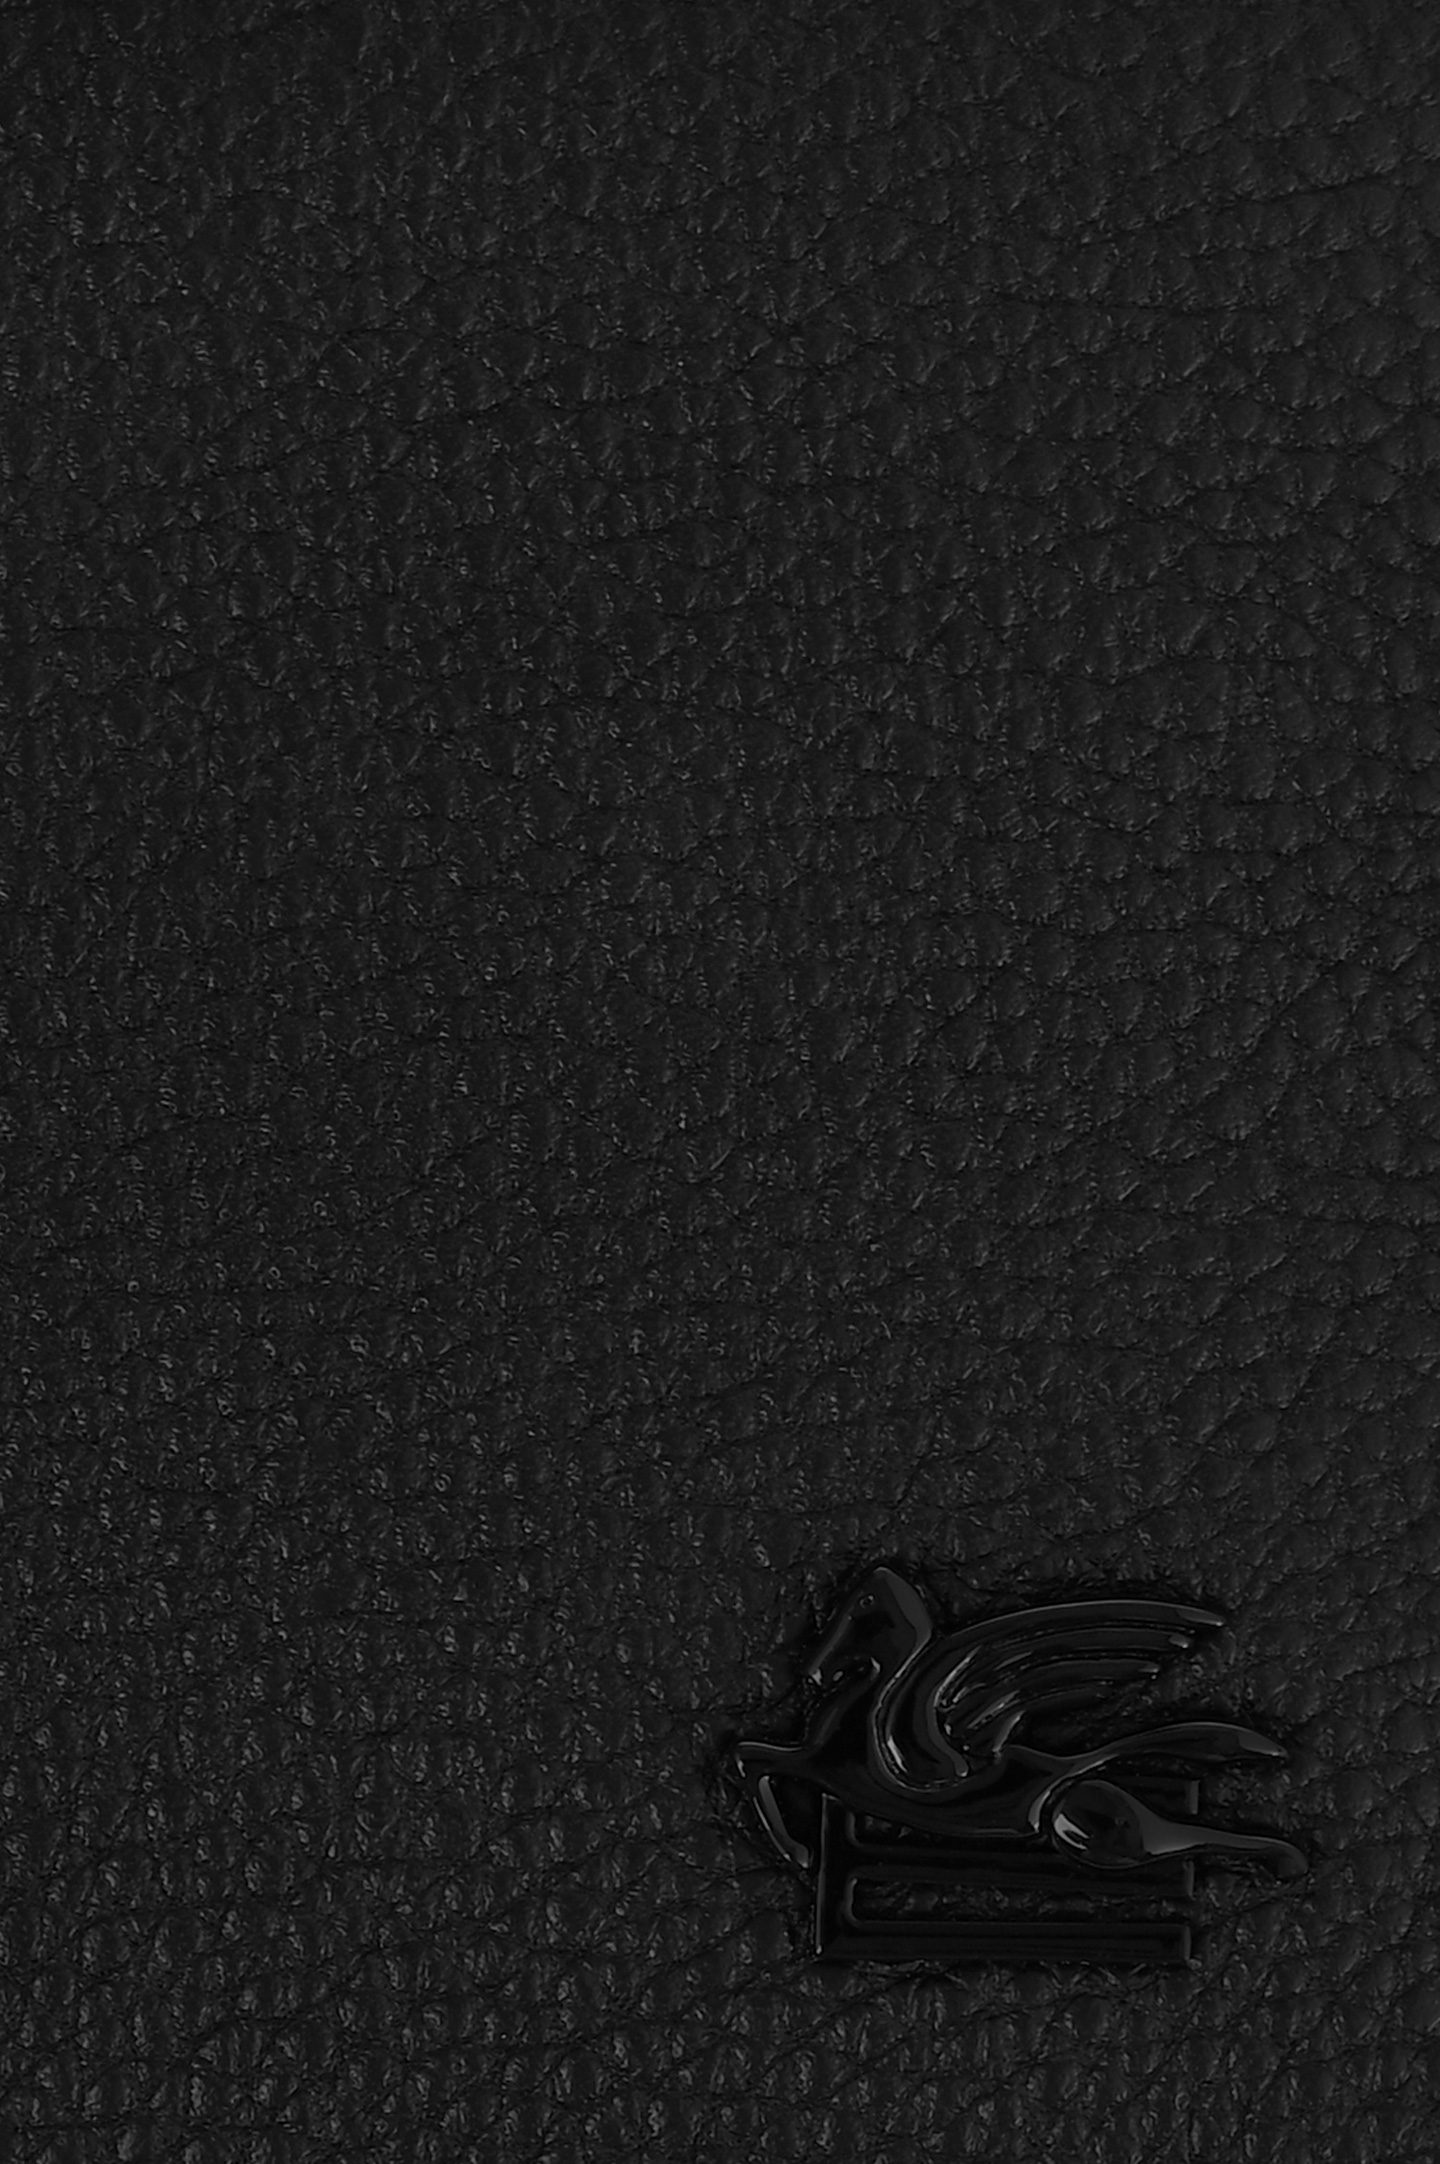 Кожаное портмоне ETRO MP2D0001 AU015, цвет: Черный, Мужской